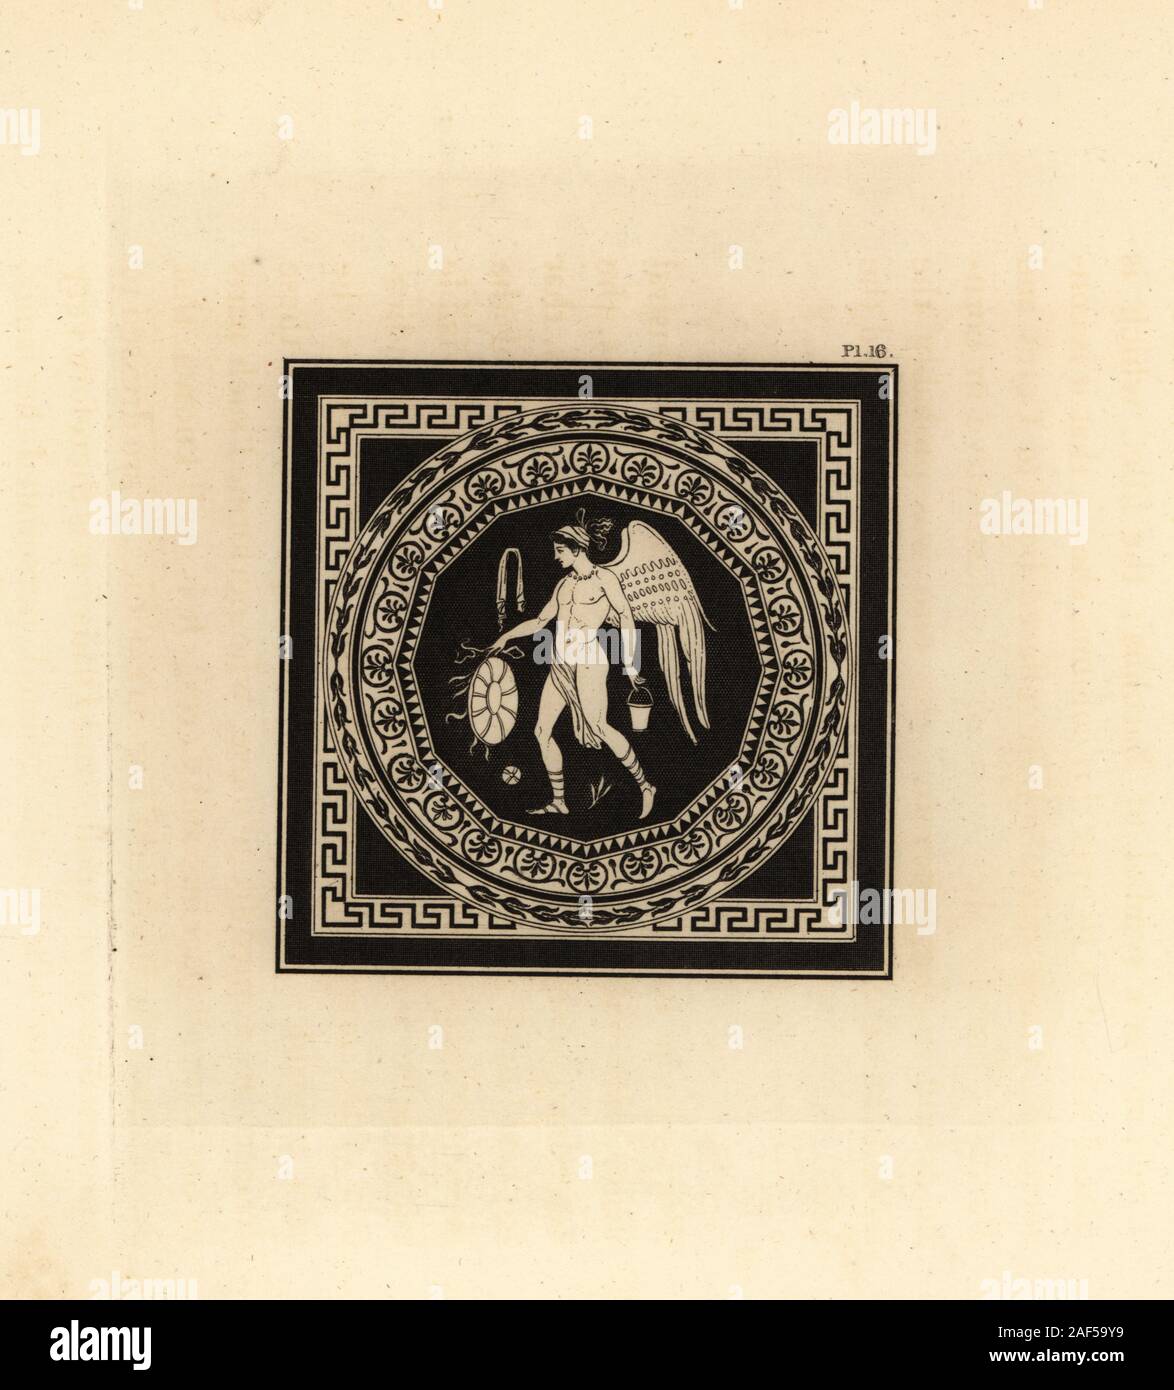 Génie ailé androgyne à une fête de Cérès (symbolisée par la lune) ou Bacchus, le comptable d'un vase d'eau lustrale et le mystérieux vase de Iacchus couverts par un ceste bataille ou gant. Dans un circulaire frontière de motifs floraux à l'intérieur d'un carré d'une bordure noire décorée avec des lignes géométriques. La gravure sur cuivre par Thomas Kirk (1765-1797), de Sir William Hamilton's présente des chiffres et des compositions à la grecque, étrusque et romaine Vases de feu Sir Hamilton, T. M'Lean, Londres, 1834. Banque D'Images